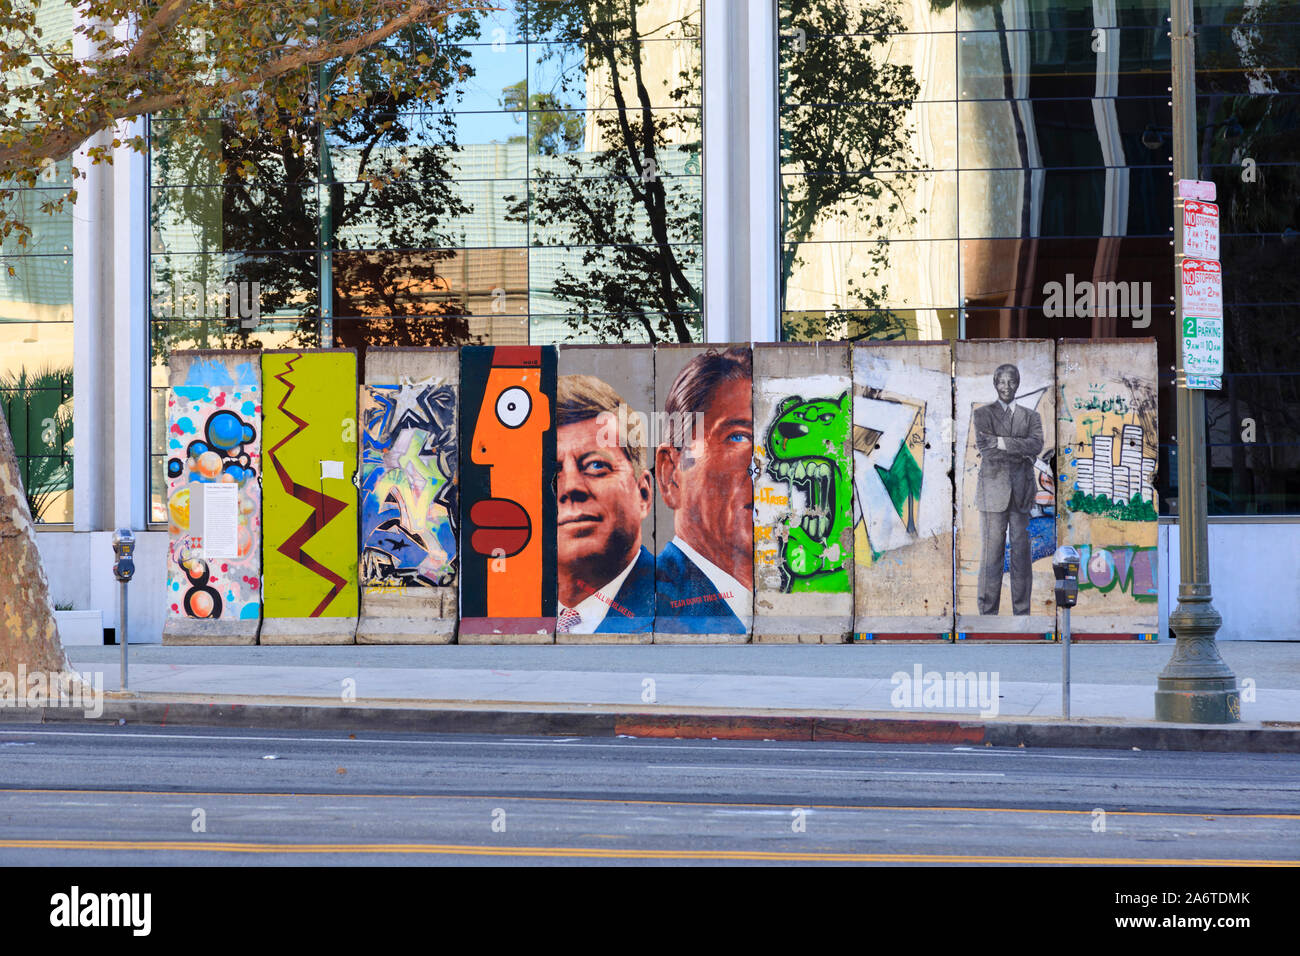 10 Segmente der Berliner Mauer aus der Wende Museum außerhalb 5900 Wilshire Boulevard, Los Angeles, Kalifornien, Vereinigte Staaten von Amerika Stockfoto